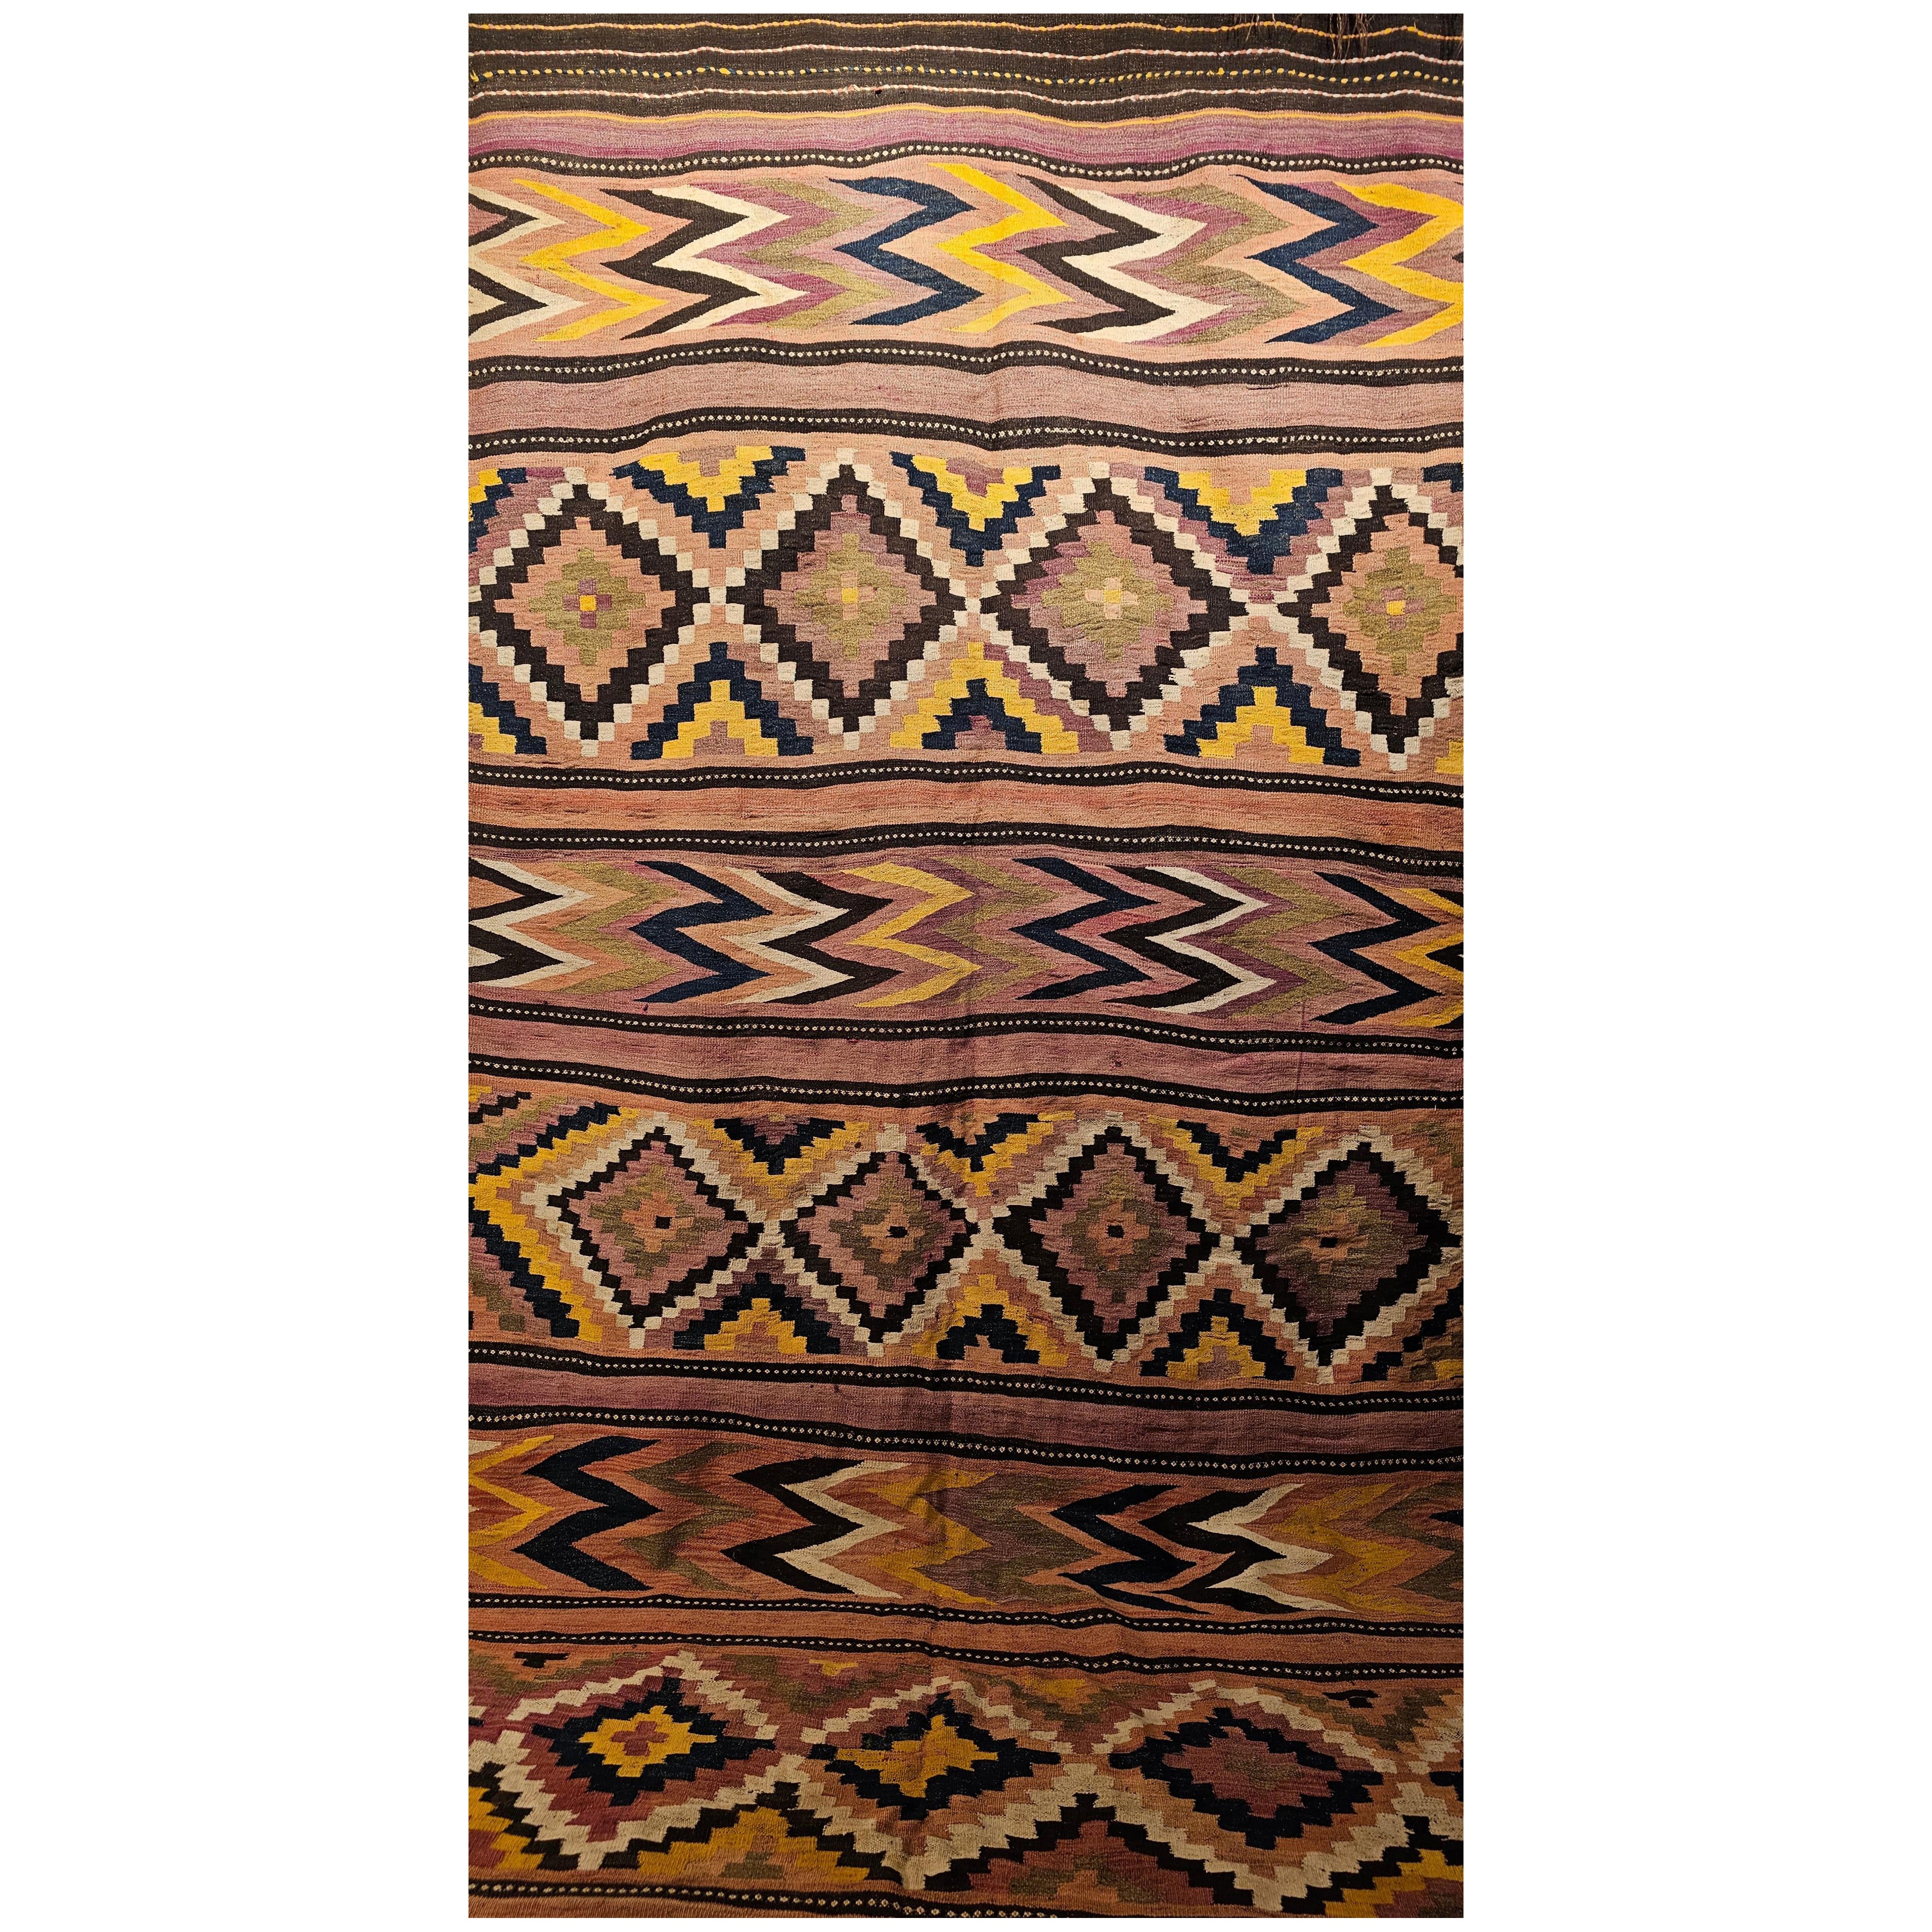 Kilim marocain surdimensionné vintage à motif géométrique avec couleurs du Sud-Ouest